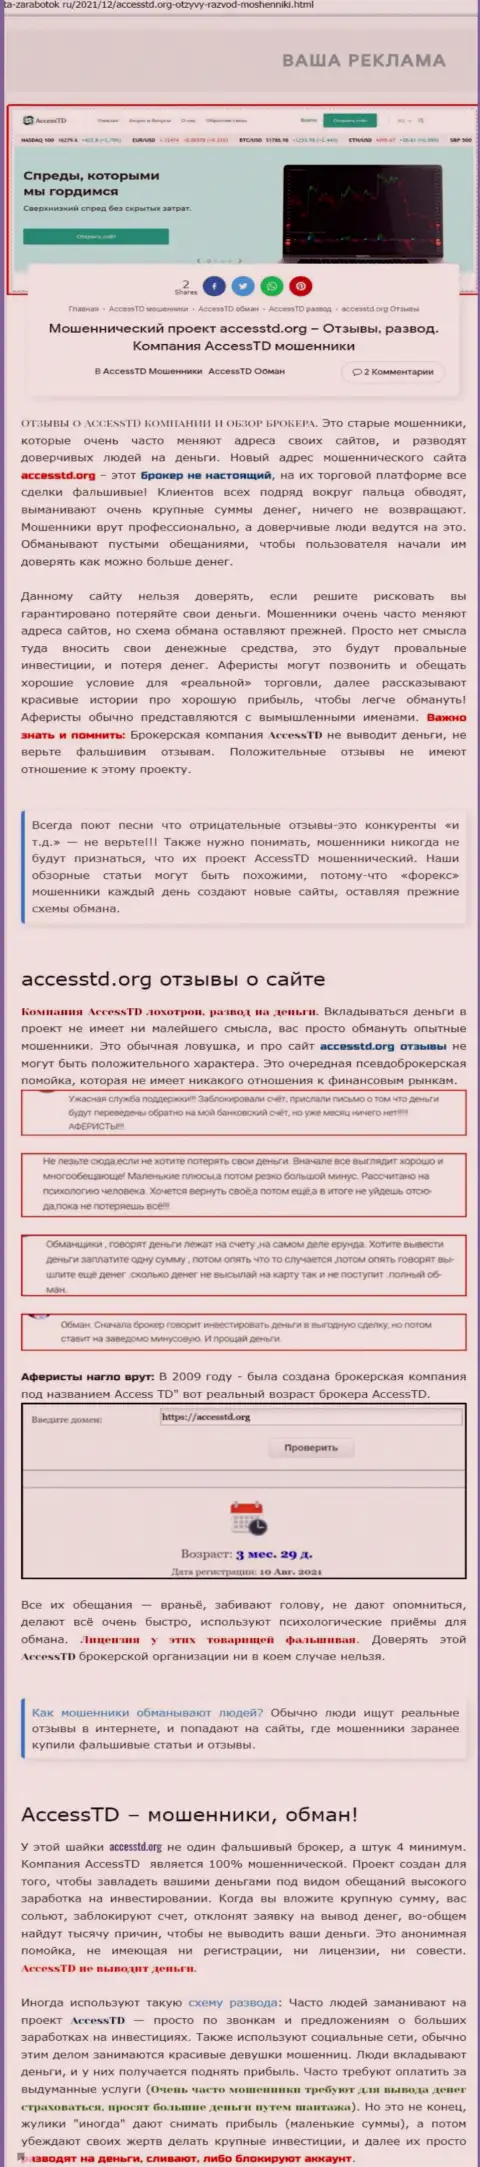 AccessTD Org - это АФЕРИСТЫ !!! Обзор неправомерных деяний организации и честные отзывы потерпевших